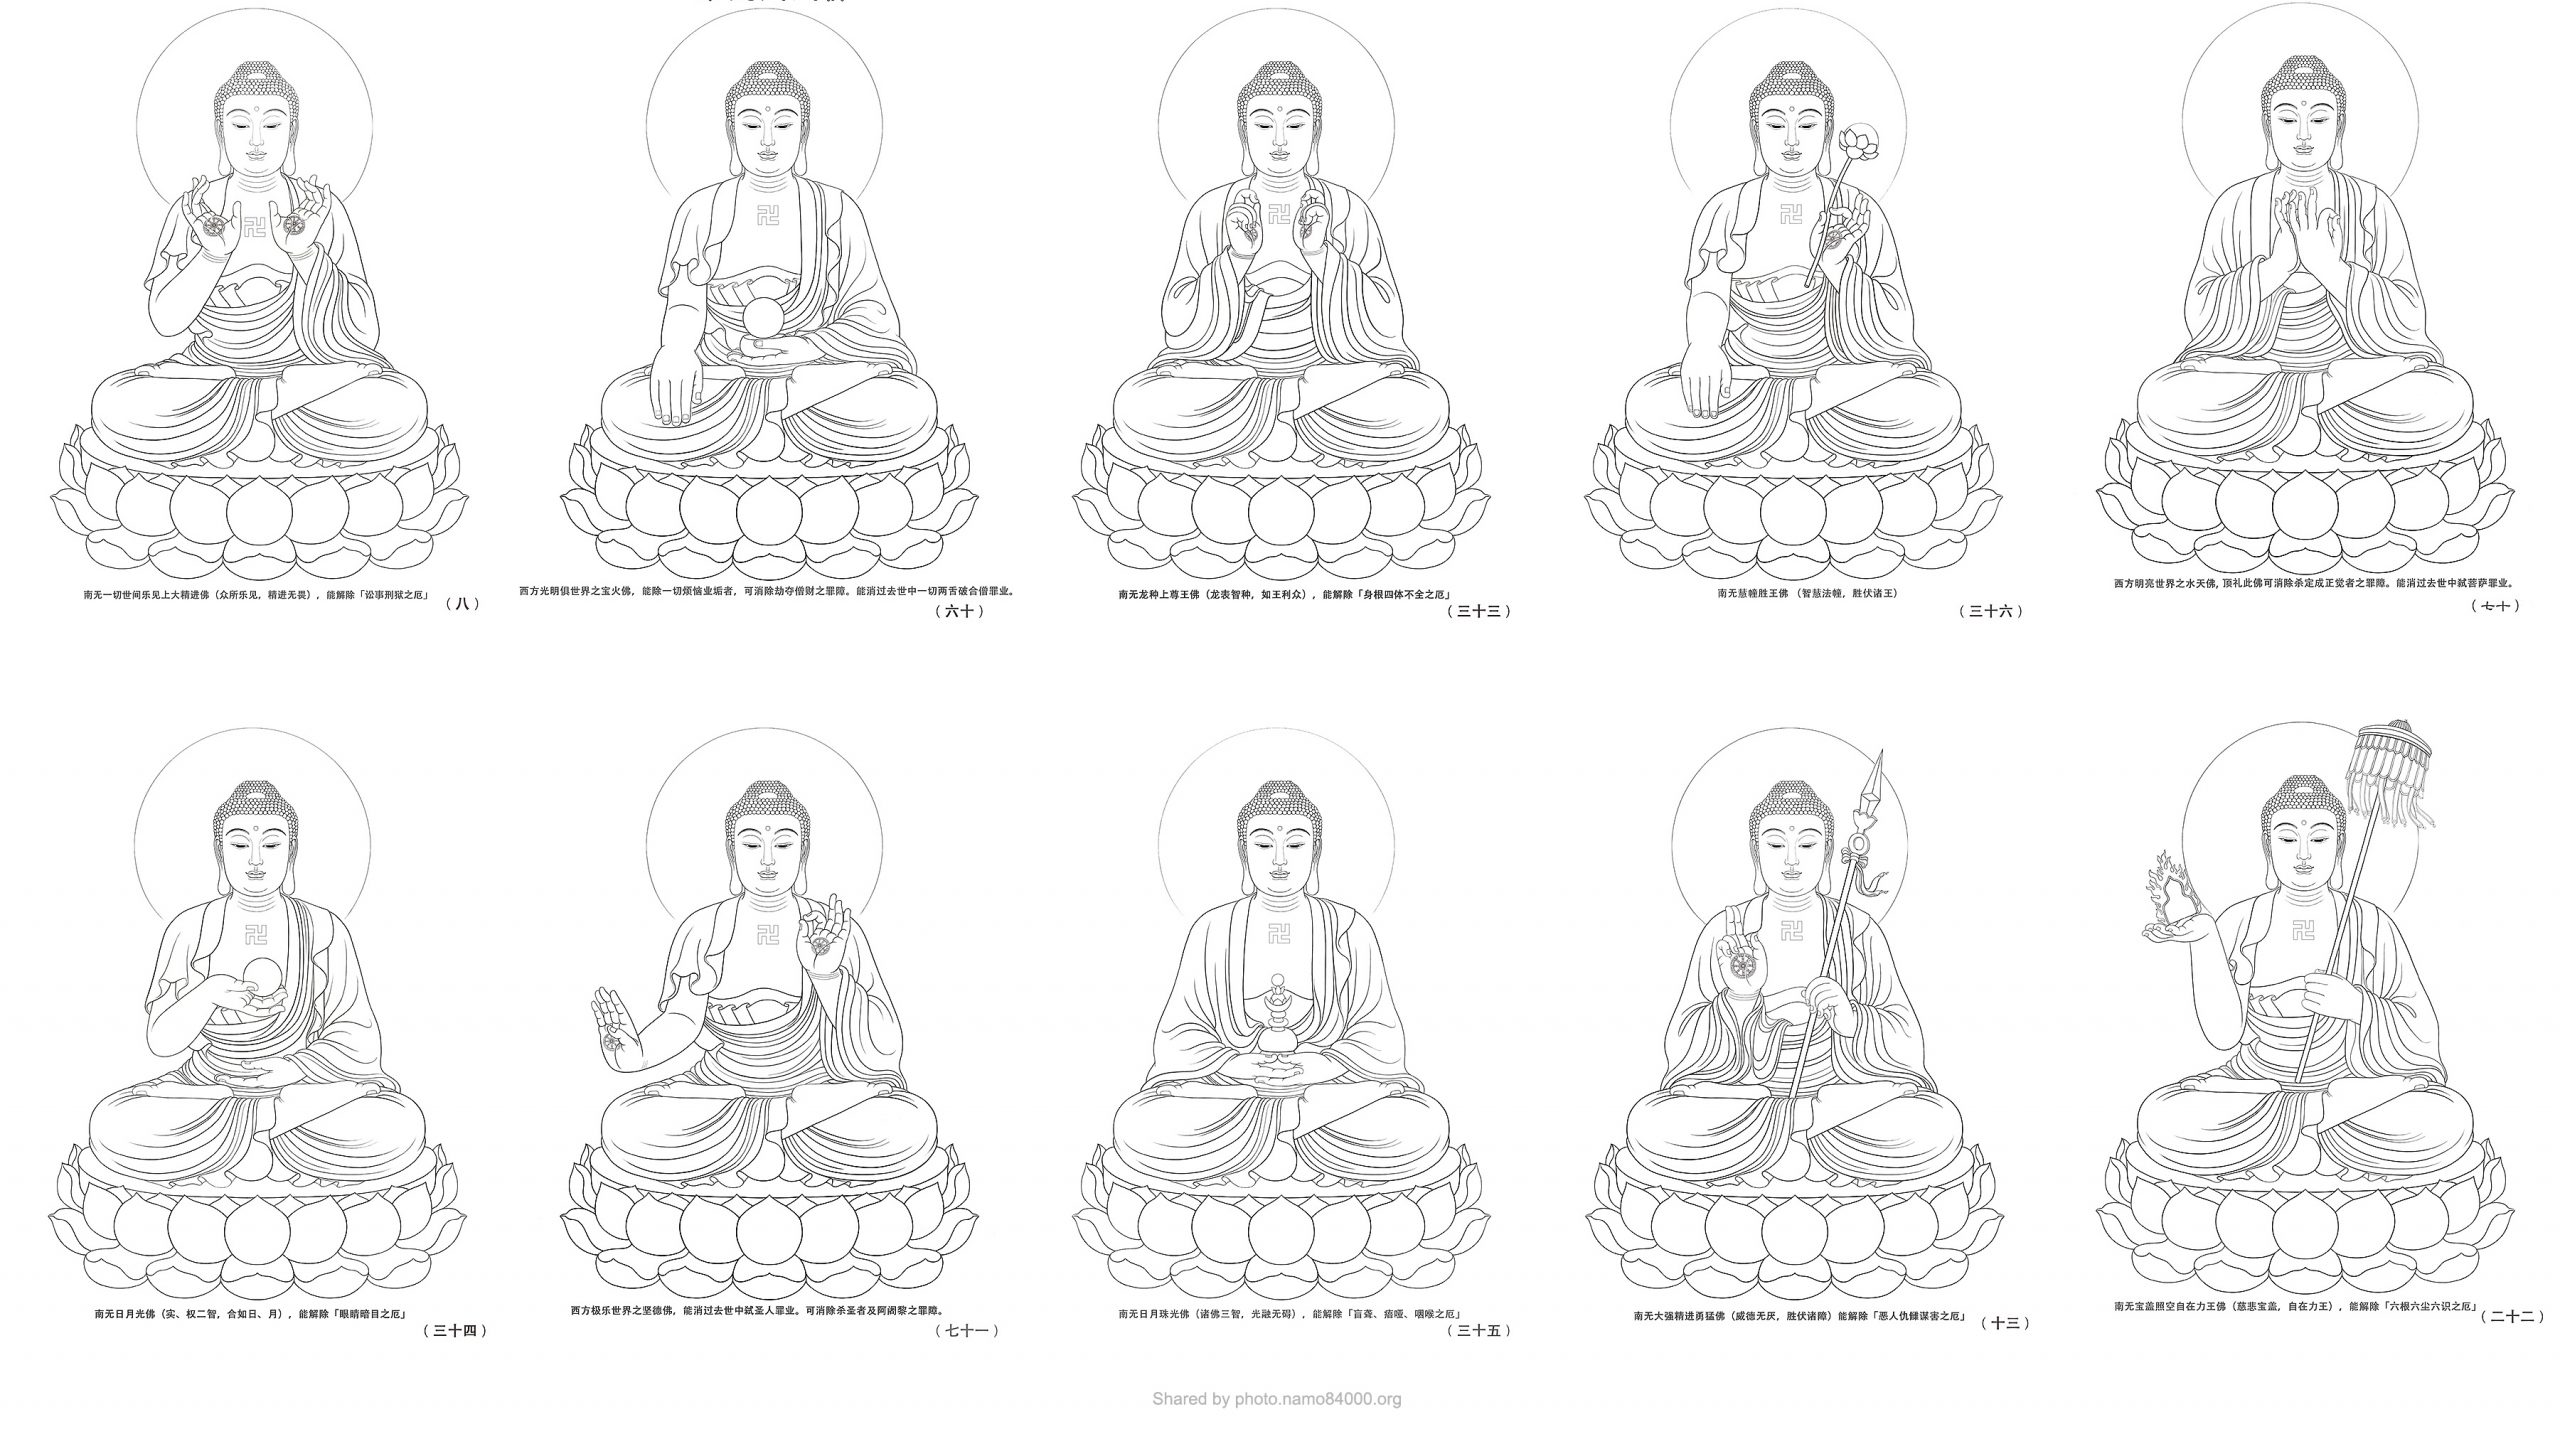 Tôn ảnh 88 Đức Phật phiên bản đen trắng – Black and White images of 88 Buddhas